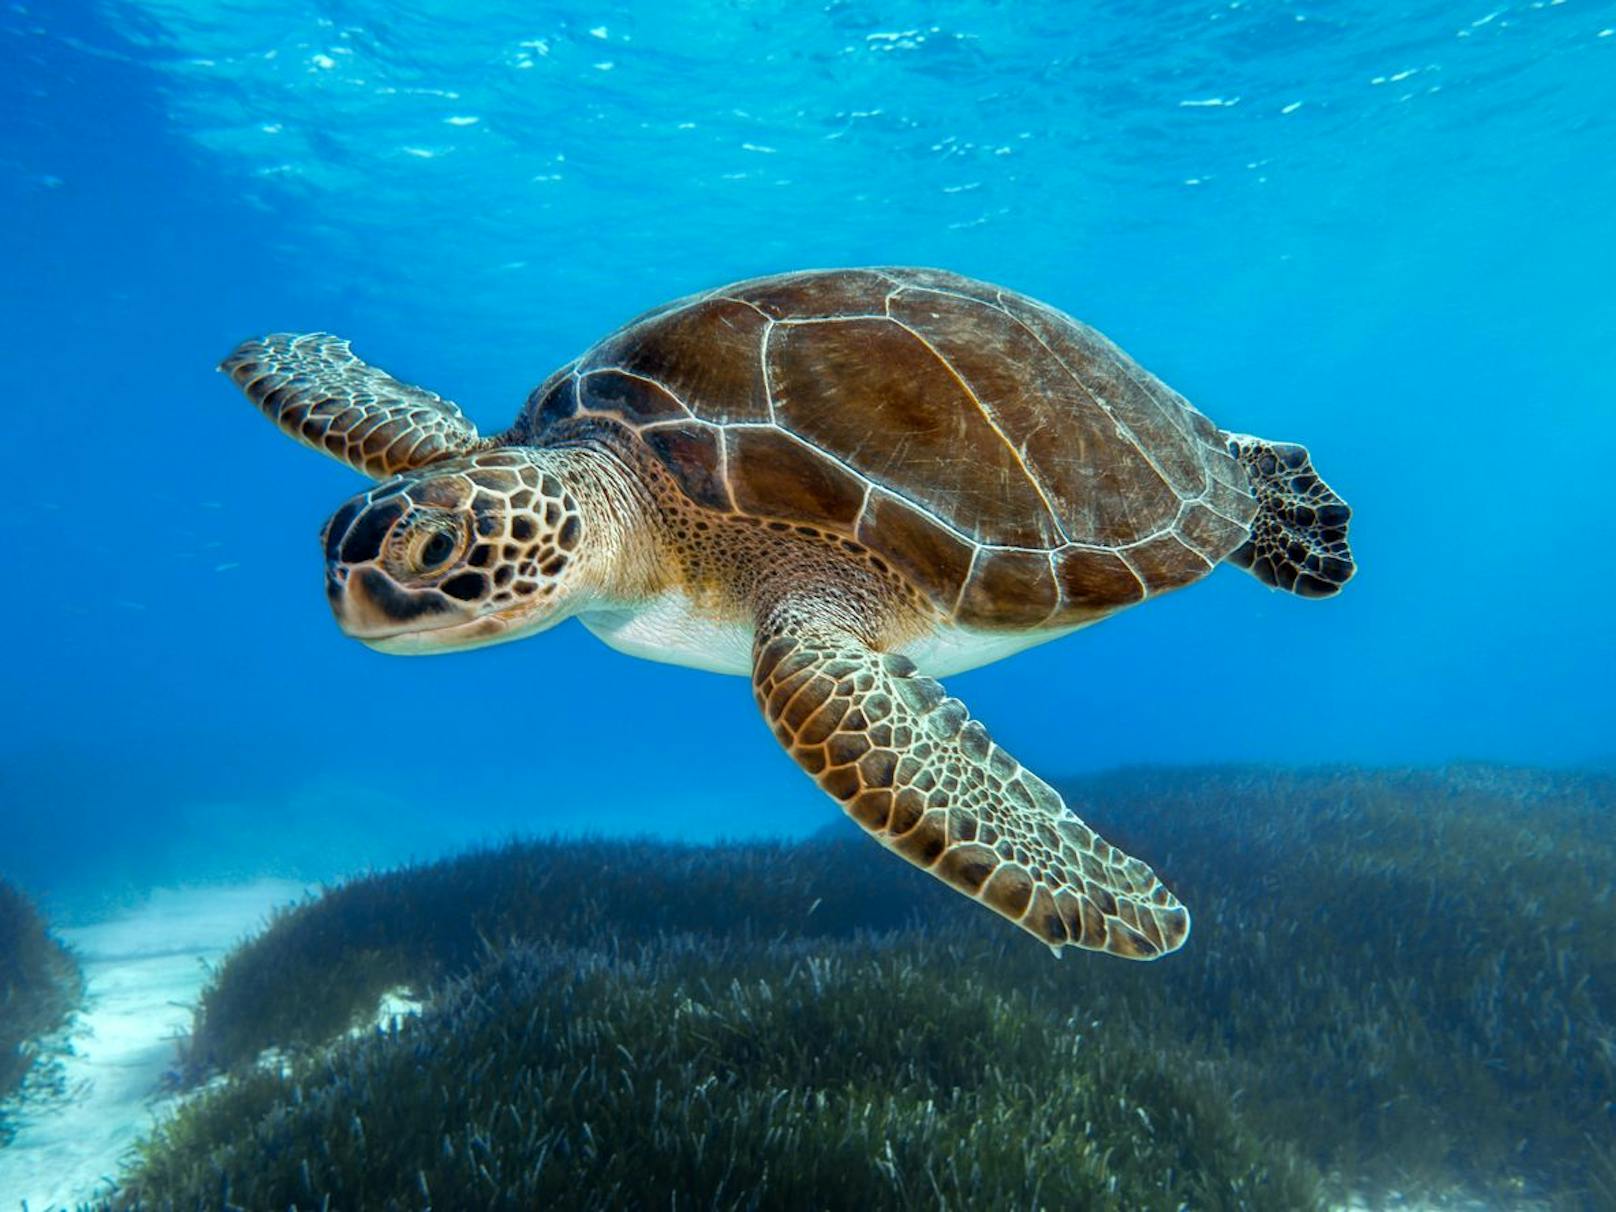 Die Insel Trindade ist eines der weltweit wichtigsten <strong>Schutzgebiete für die Grüne Meeresschildkröte,</strong> die jedes Jahr zu Tausenden zur Eiablage hierher kommt. Die einzigen menschlichen Bewohner auf Trindade sind Mitglieder der brasilianischen Marine, die einen Stützpunkt auf der Insel unterhält und die nistenden Schildkröten schützt. "Der Ort, an dem wir diese Plastikproben gefunden haben, ist ein dauerhaft geschütztes Gebiet in Brasilien, in der Nähe des Ortes, an dem grüne Schildkröten ihre Eier ablegen", sagte Santos.